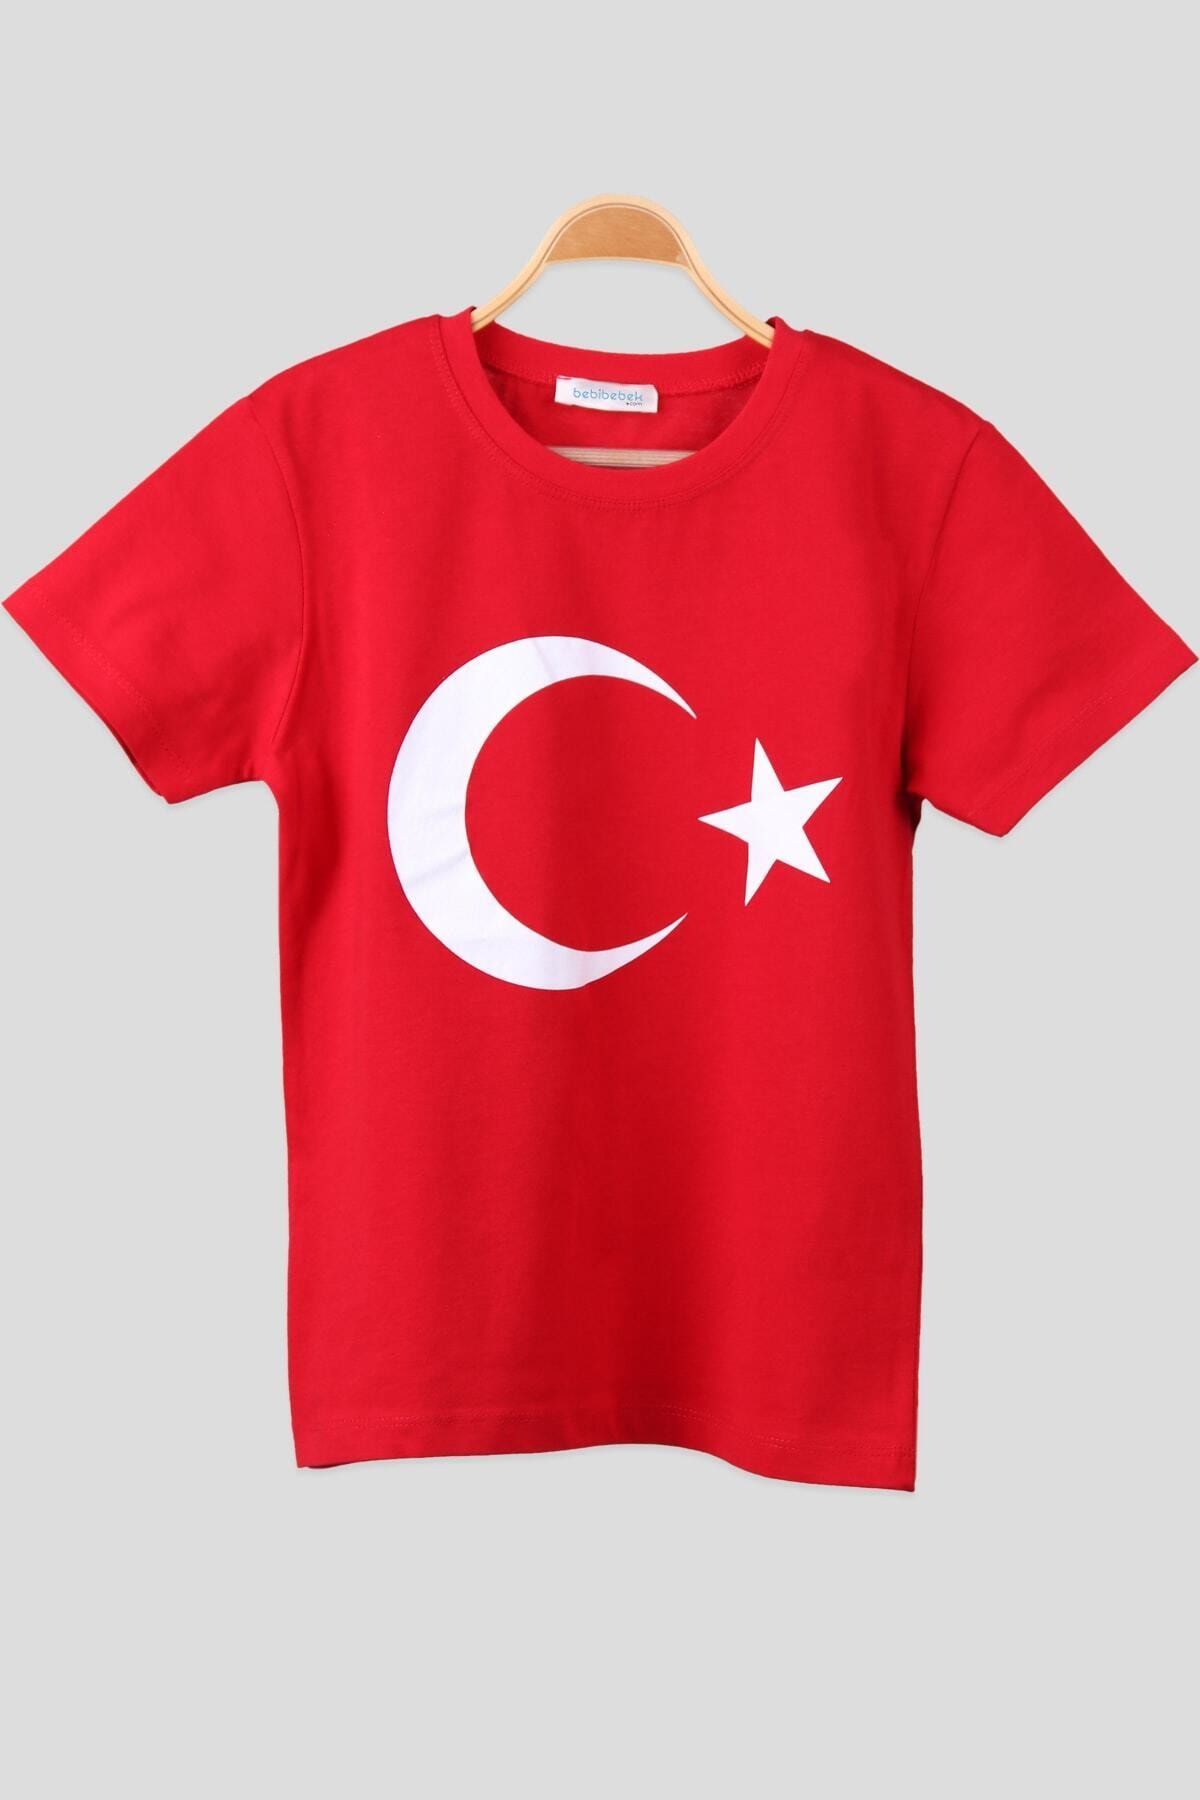 NACAR STORE Unısex Kırmızı Ayyıldız Baskılı Baskılı Çocuk T-Shirt